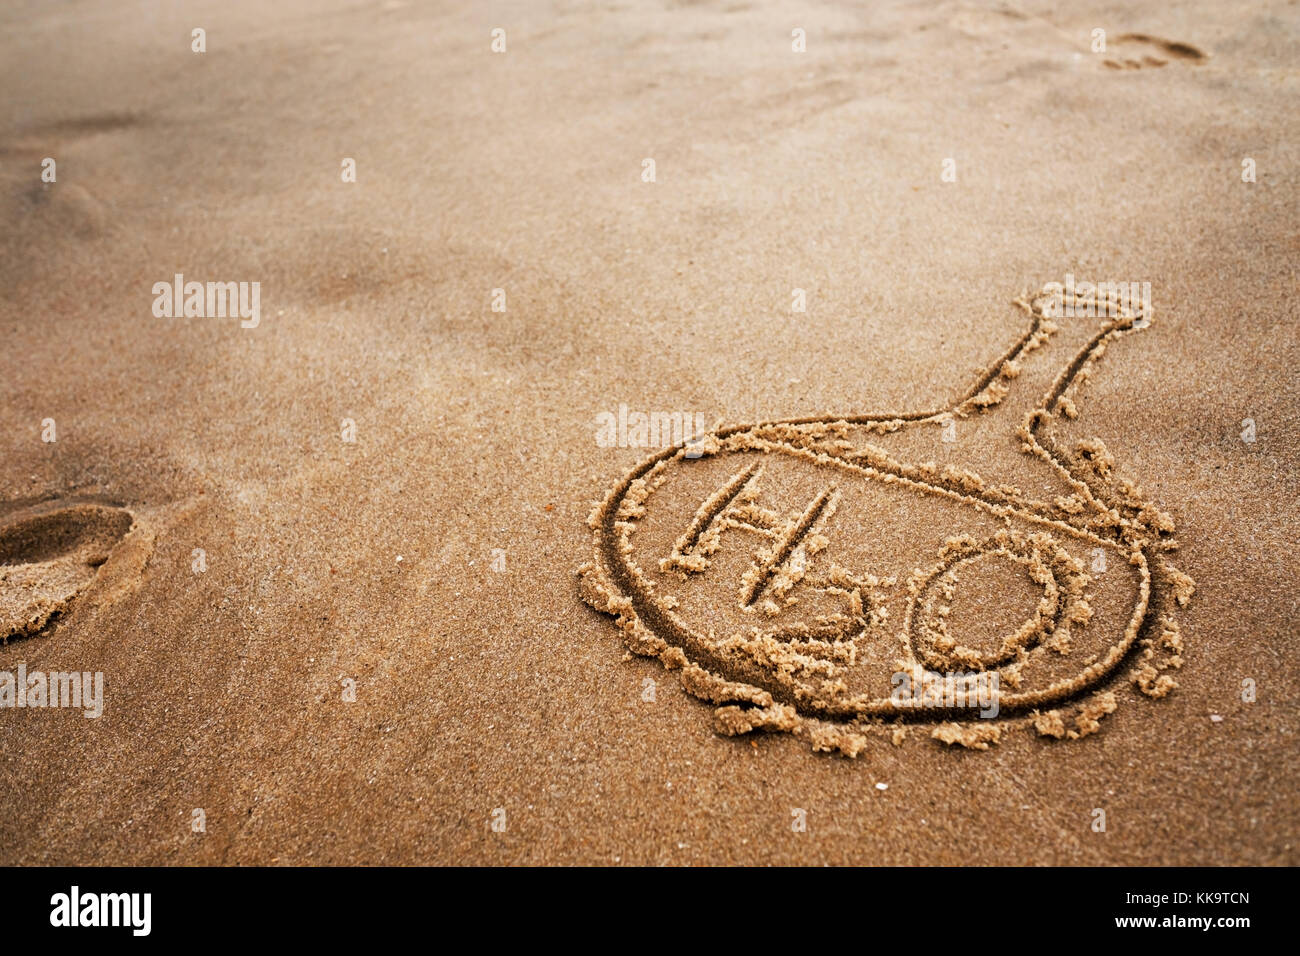 Ballon peint et la formule chimique de l'eau sur le sable. La qualité de l'eau sur la plage et l'océan. Banque D'Images